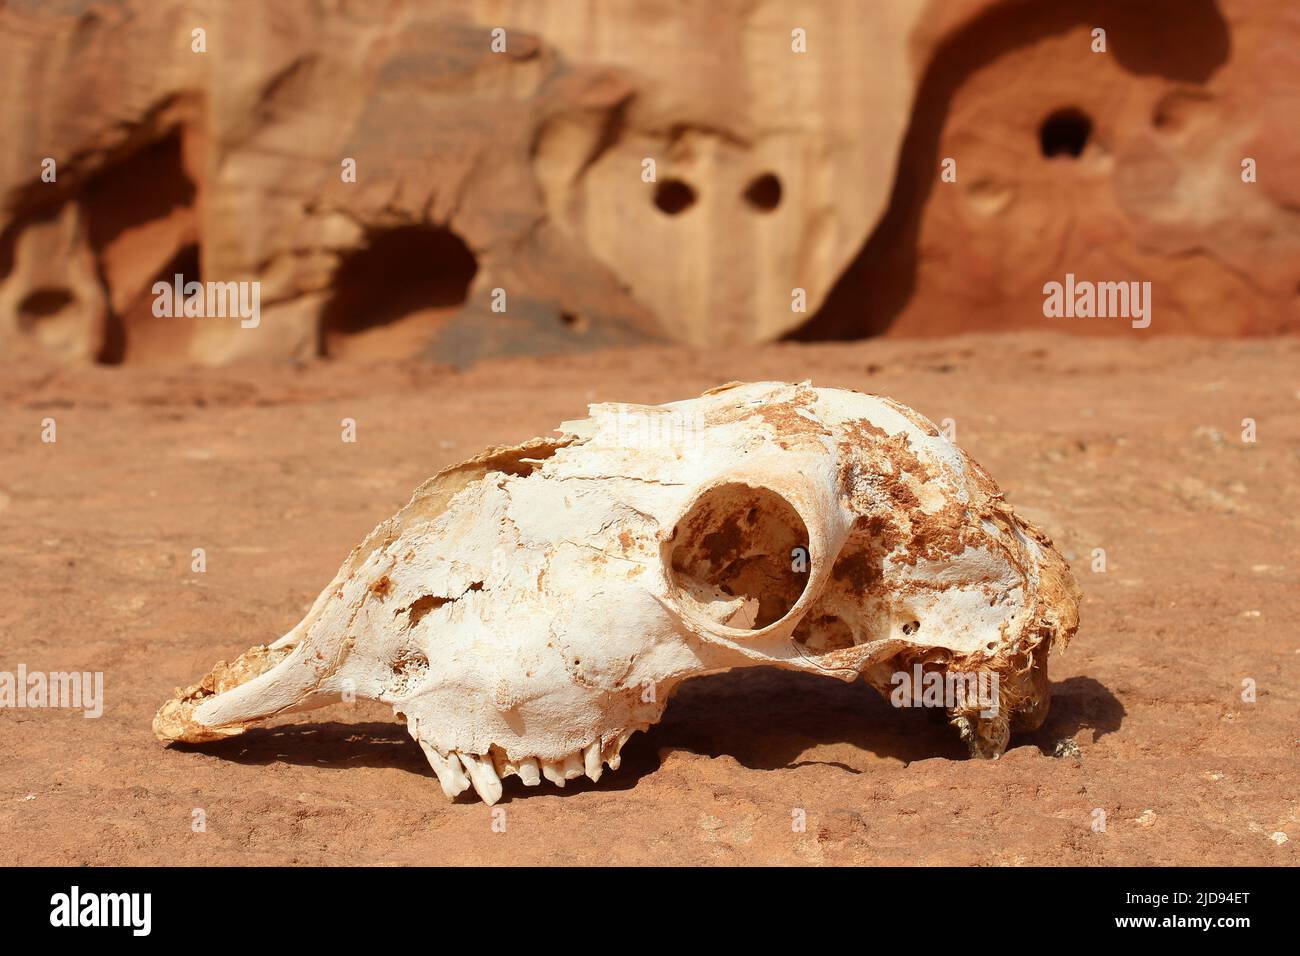 Crâne de chèvre - Wadi Rum, Jordanie Banque D'Images